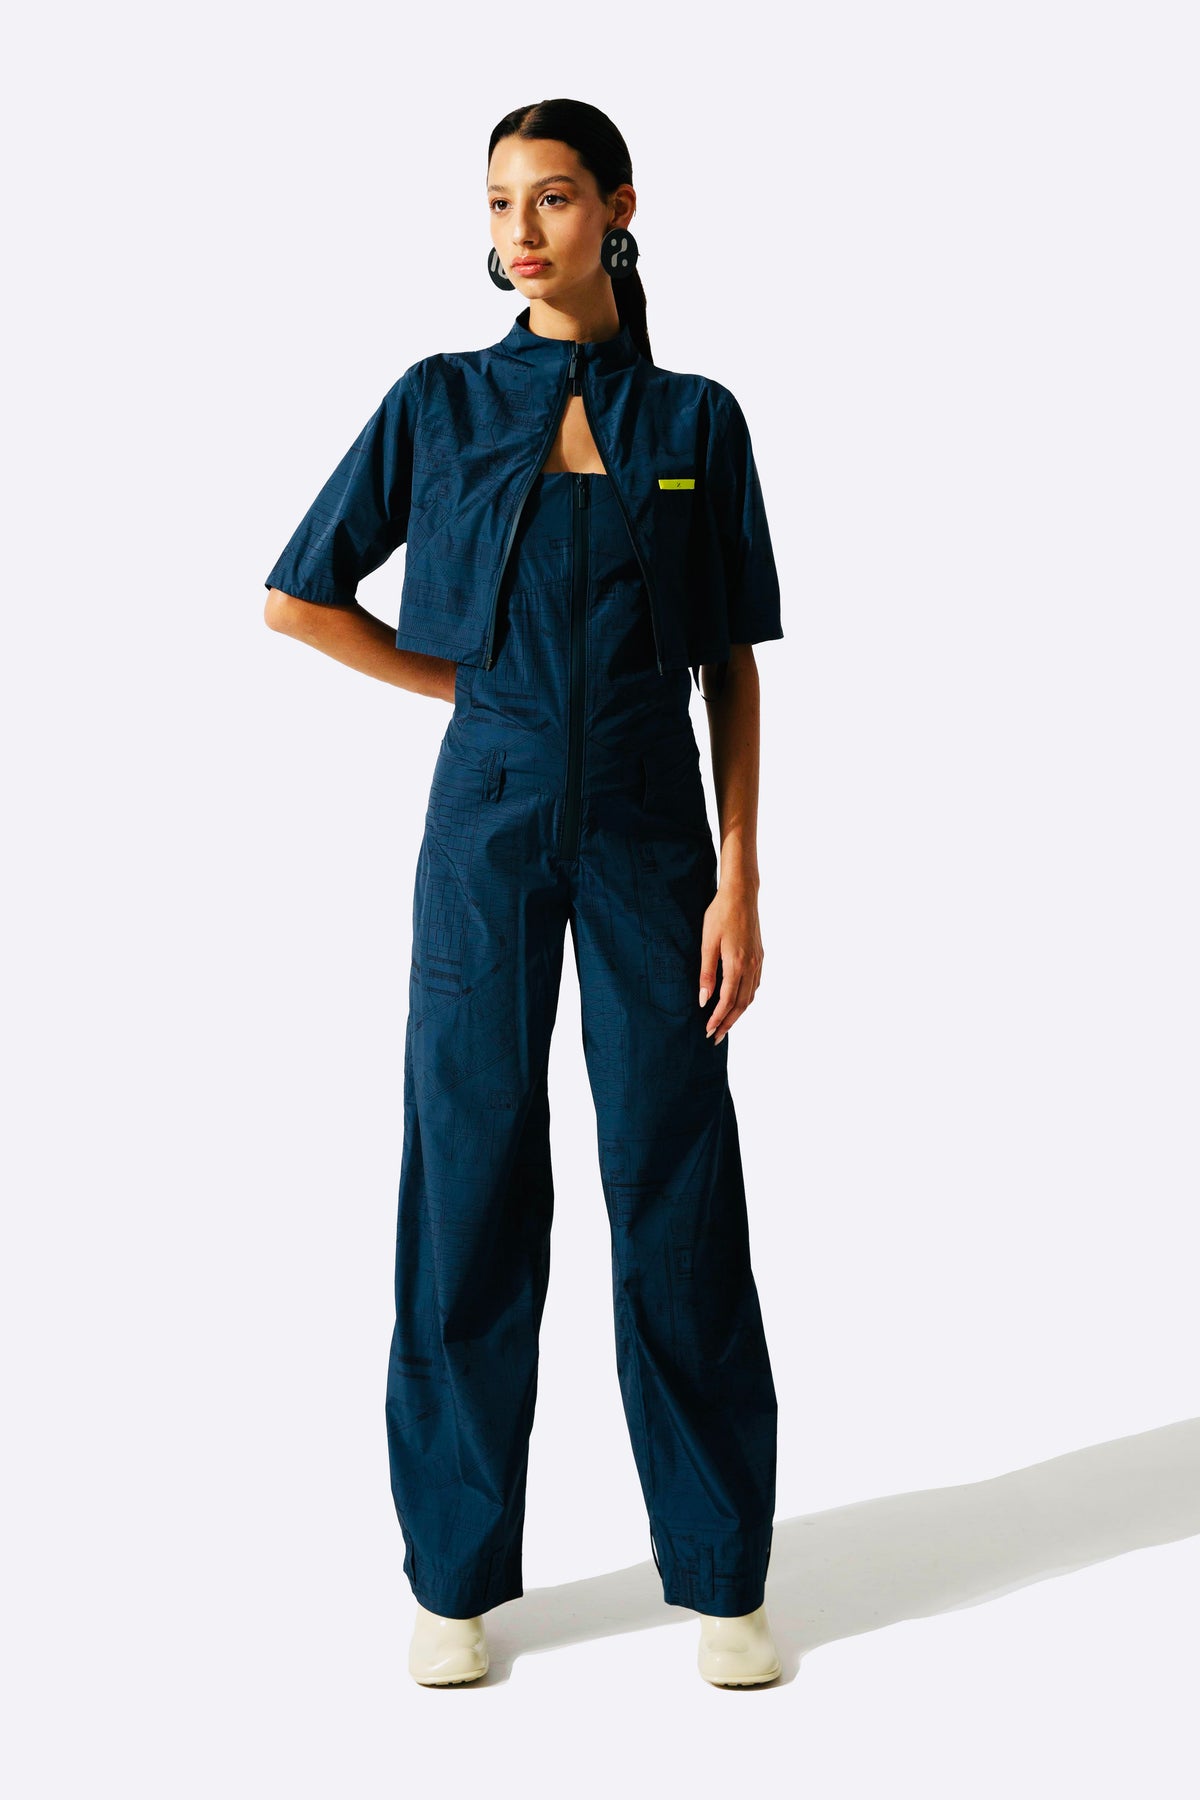 2-Way Zipper Crop Vest – 101p100, 101%, 101% clothing